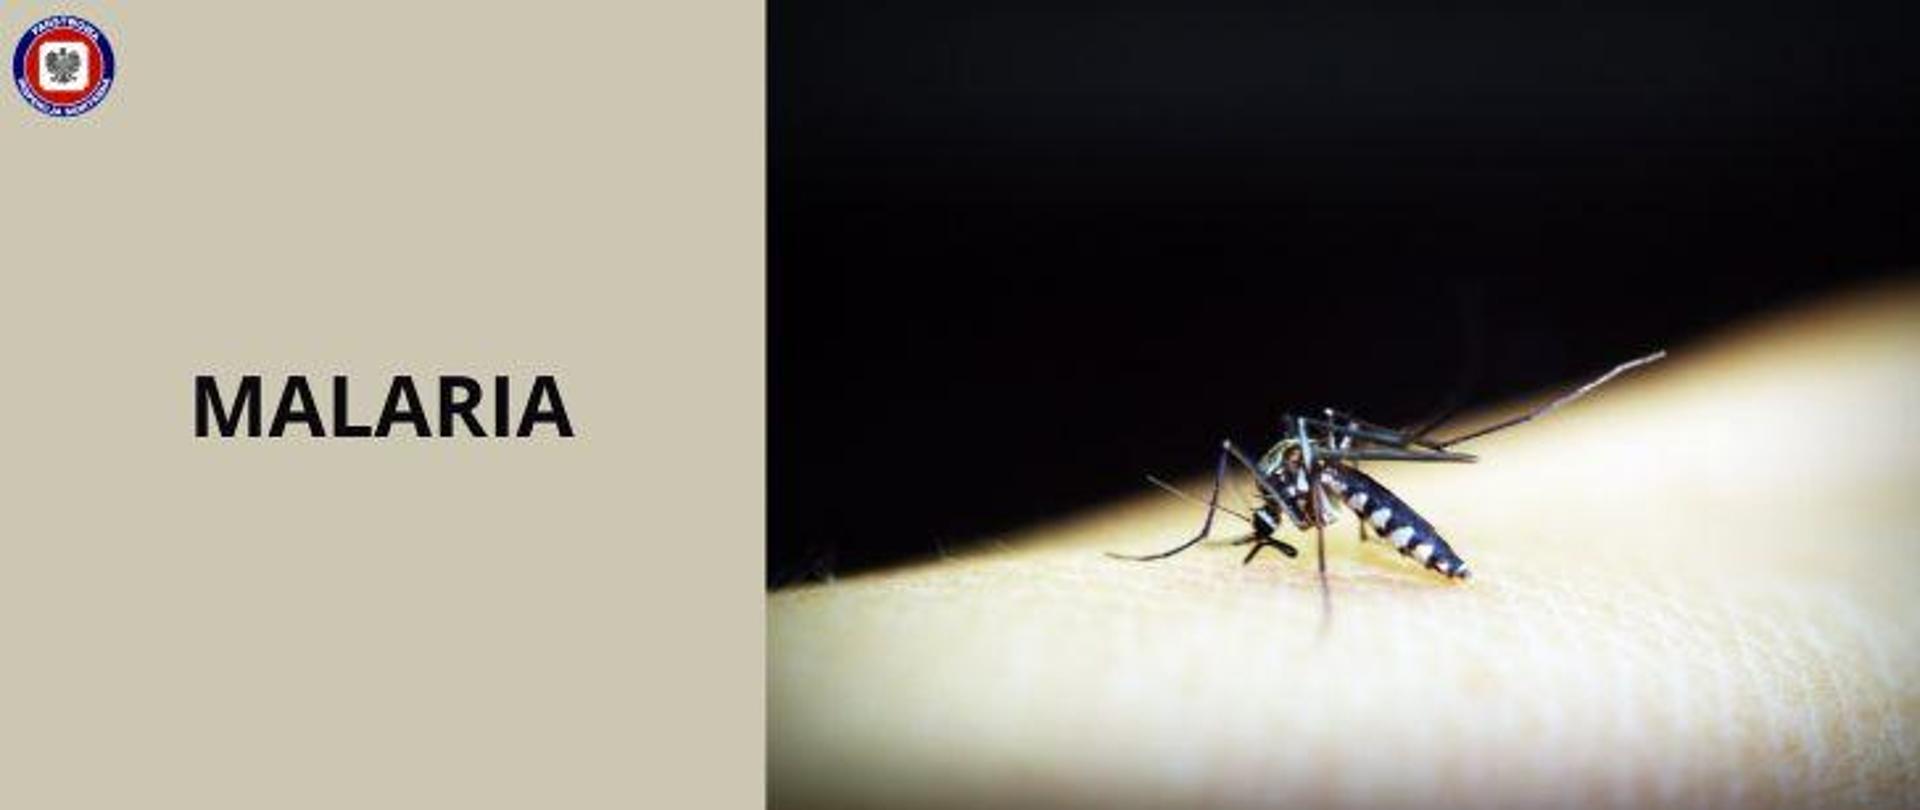 Po prawej komar siedzący na skórze, po lewej , na beżowym tle ciemny napis malaria. W lewym górnym rogu logo Państwowej Inspekcji Sanitarnej.